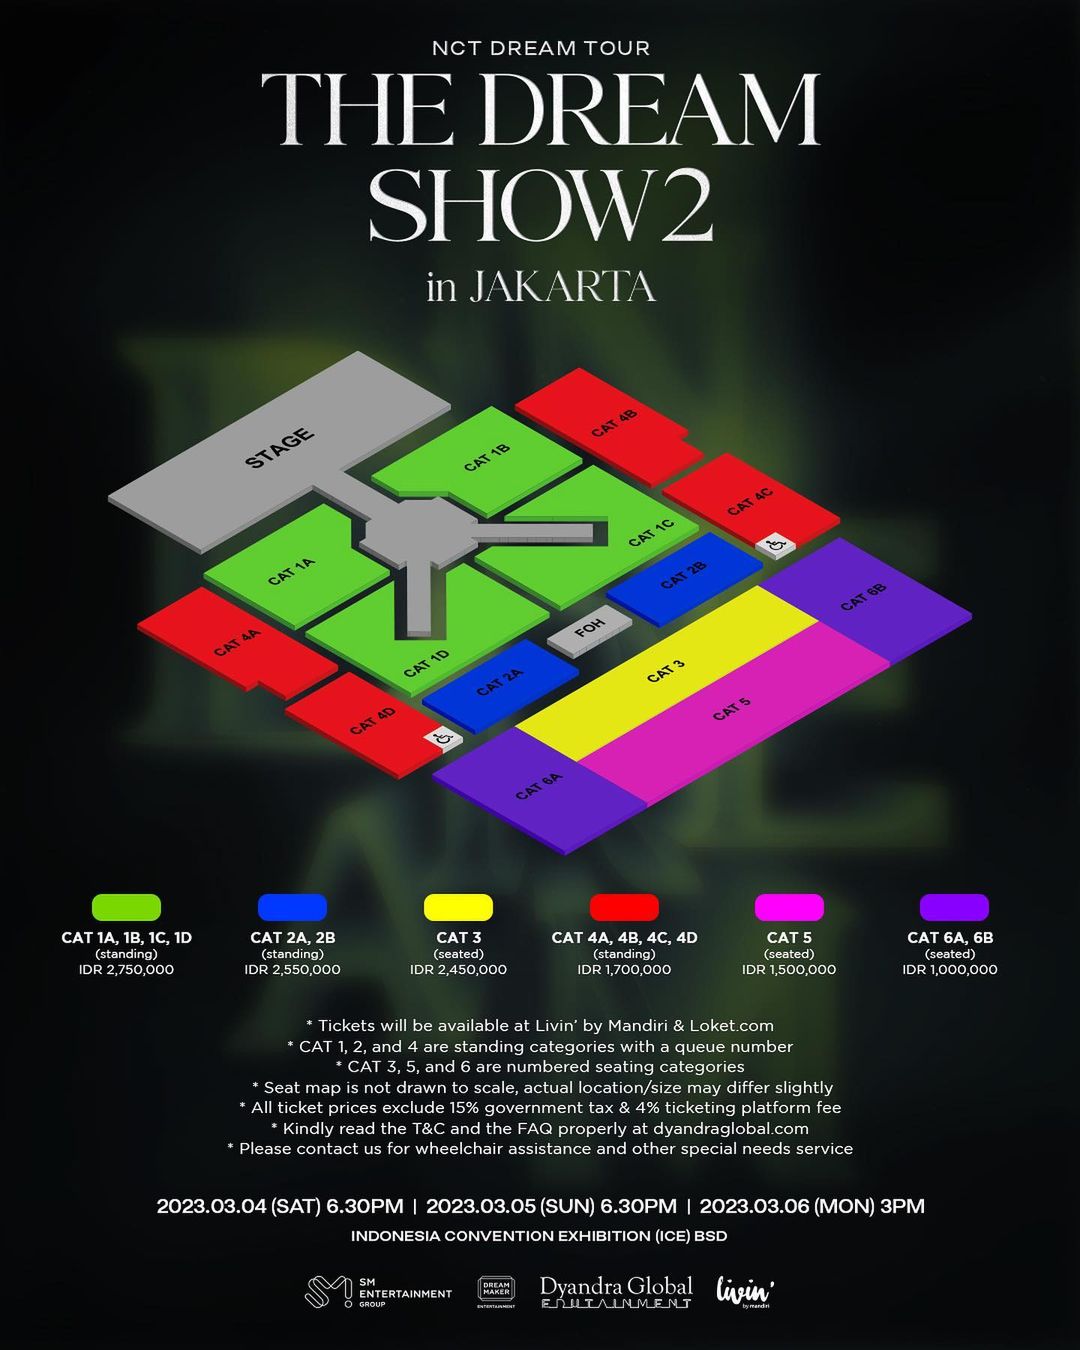 Daftar Harga dan Cara Beli Tiket Konser NCT Dream “The Dream Show 2 in